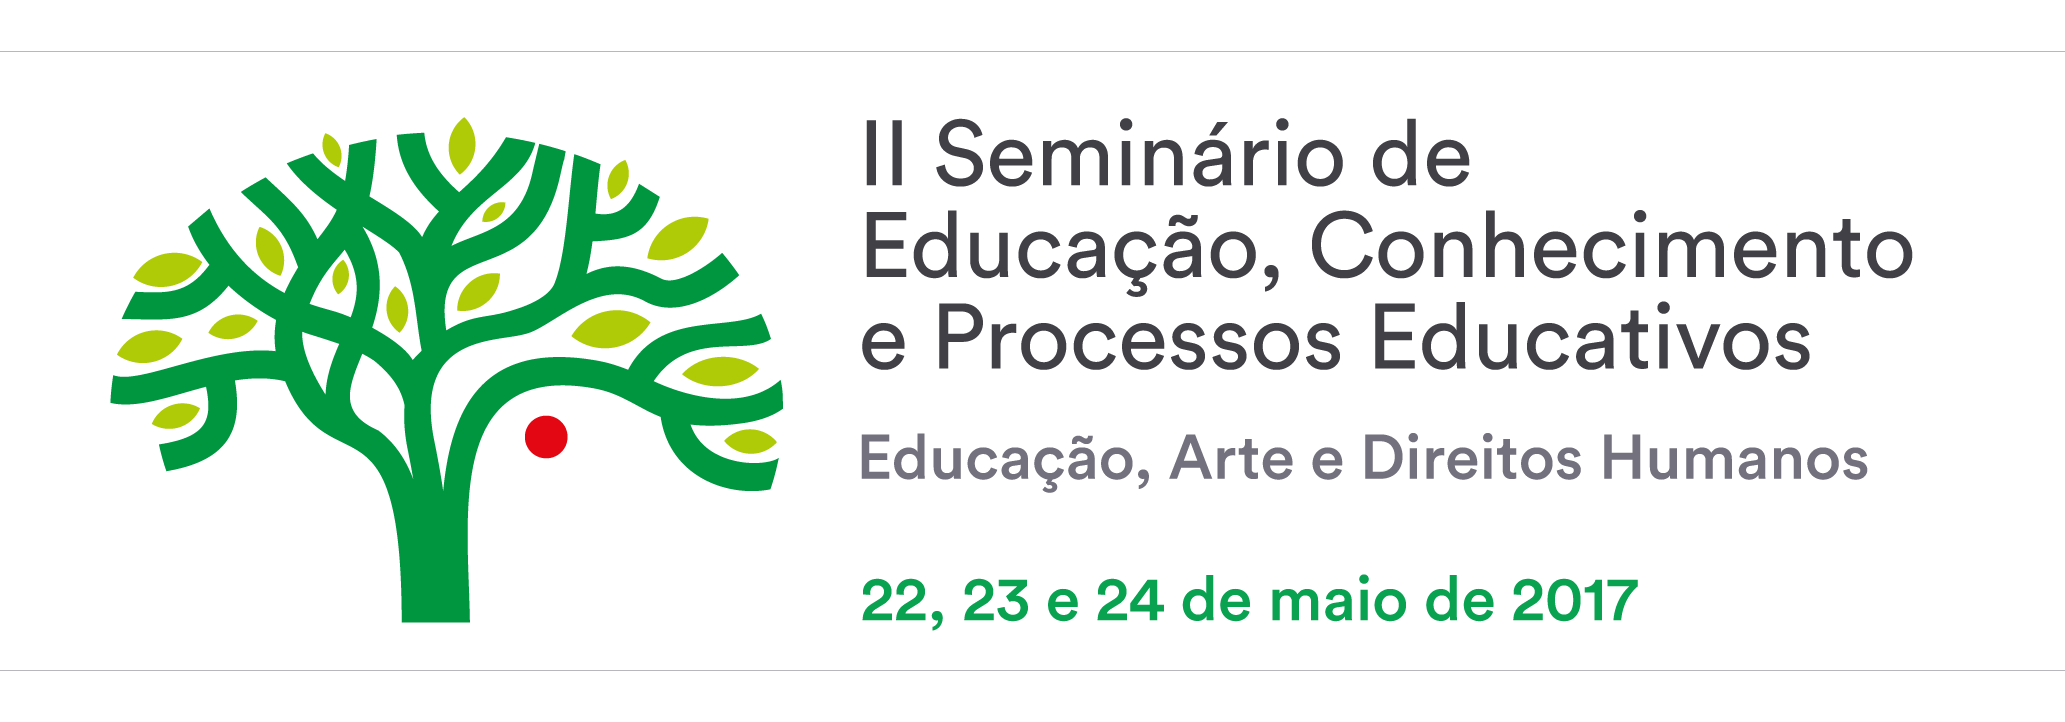 II Seminário de Educação, Conhecimento e Processos Educativos